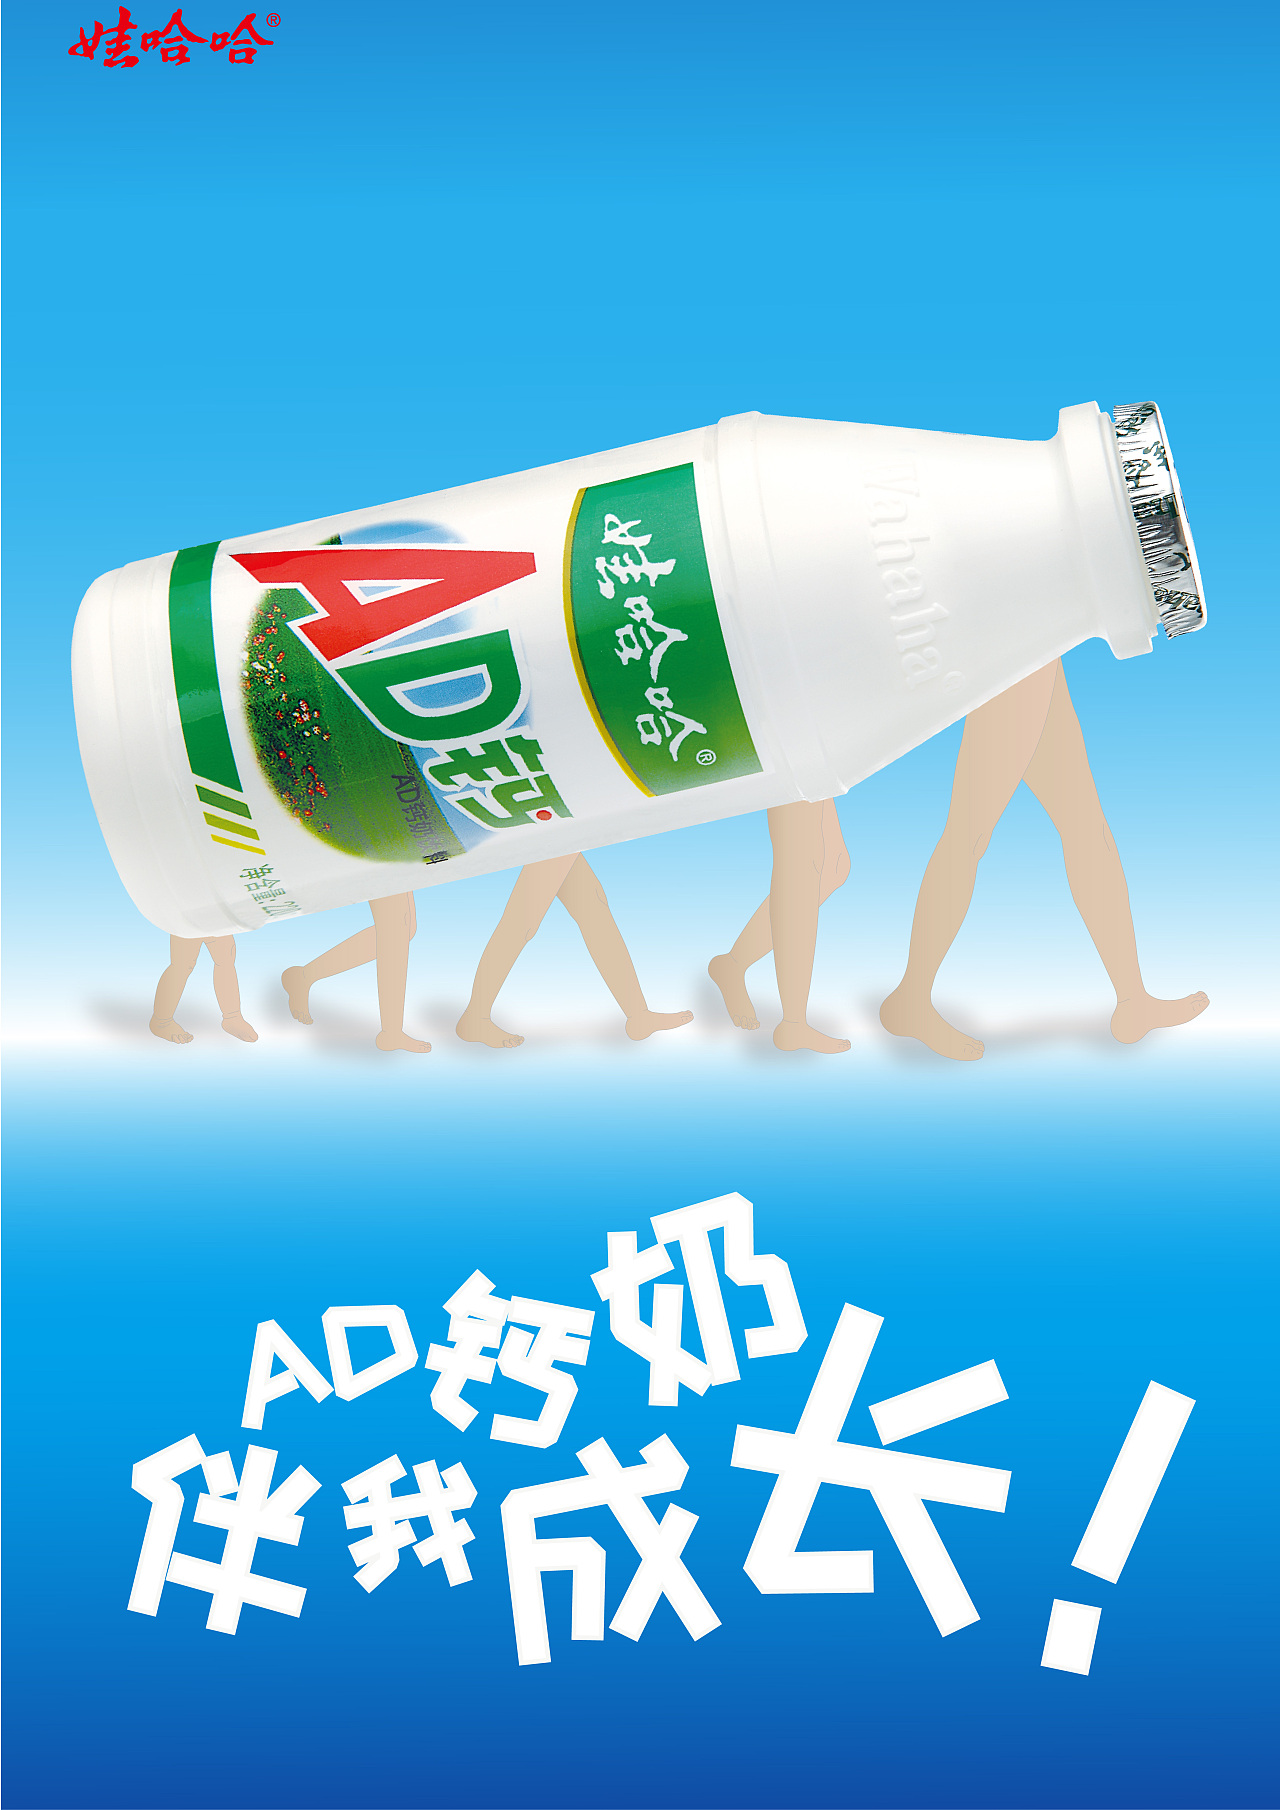 娃哈哈ad钙奶广告创意图片